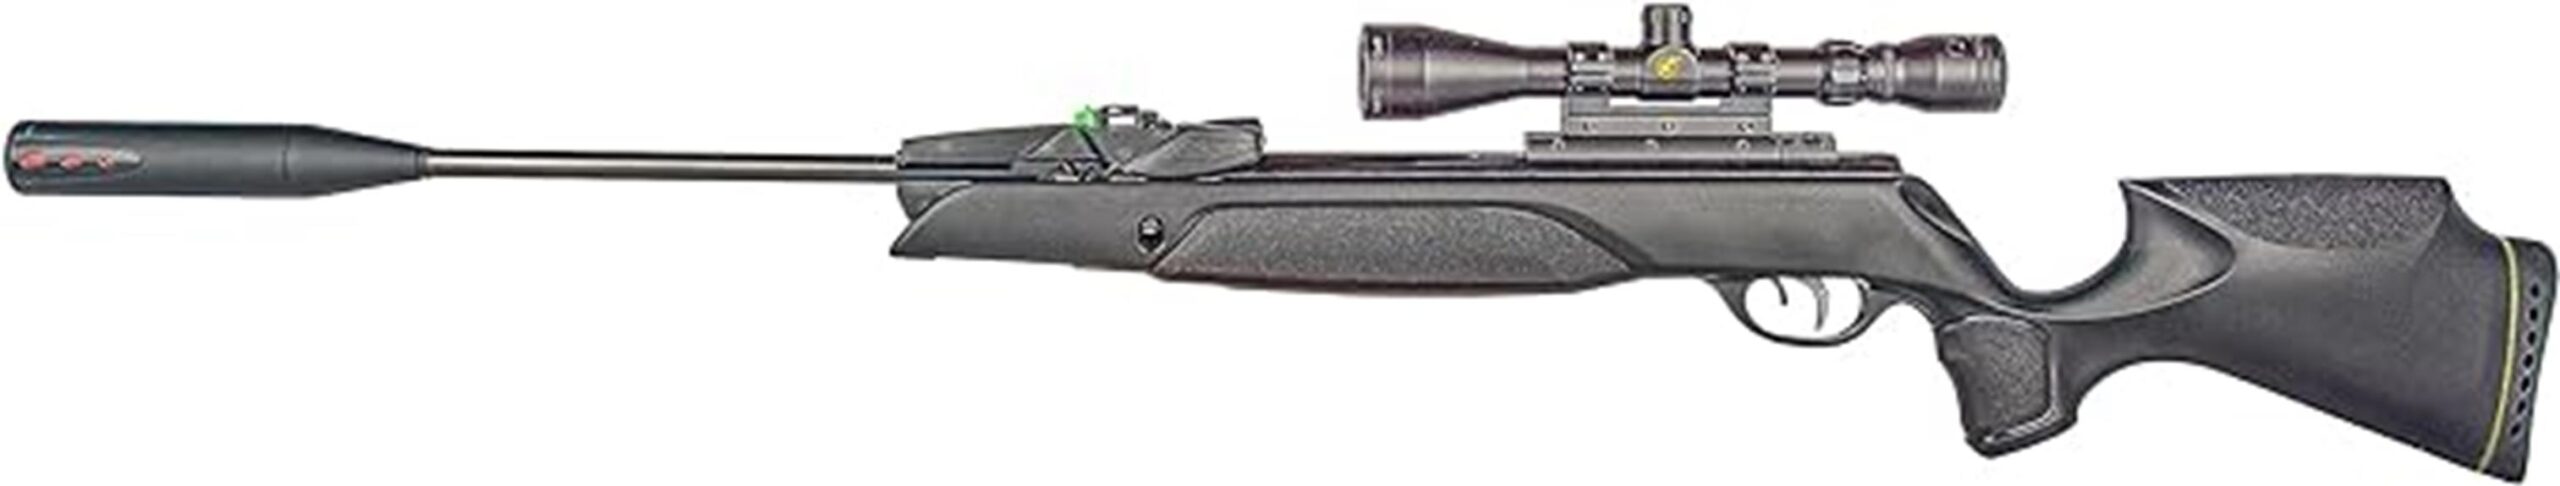 high powered multi shot air rifle